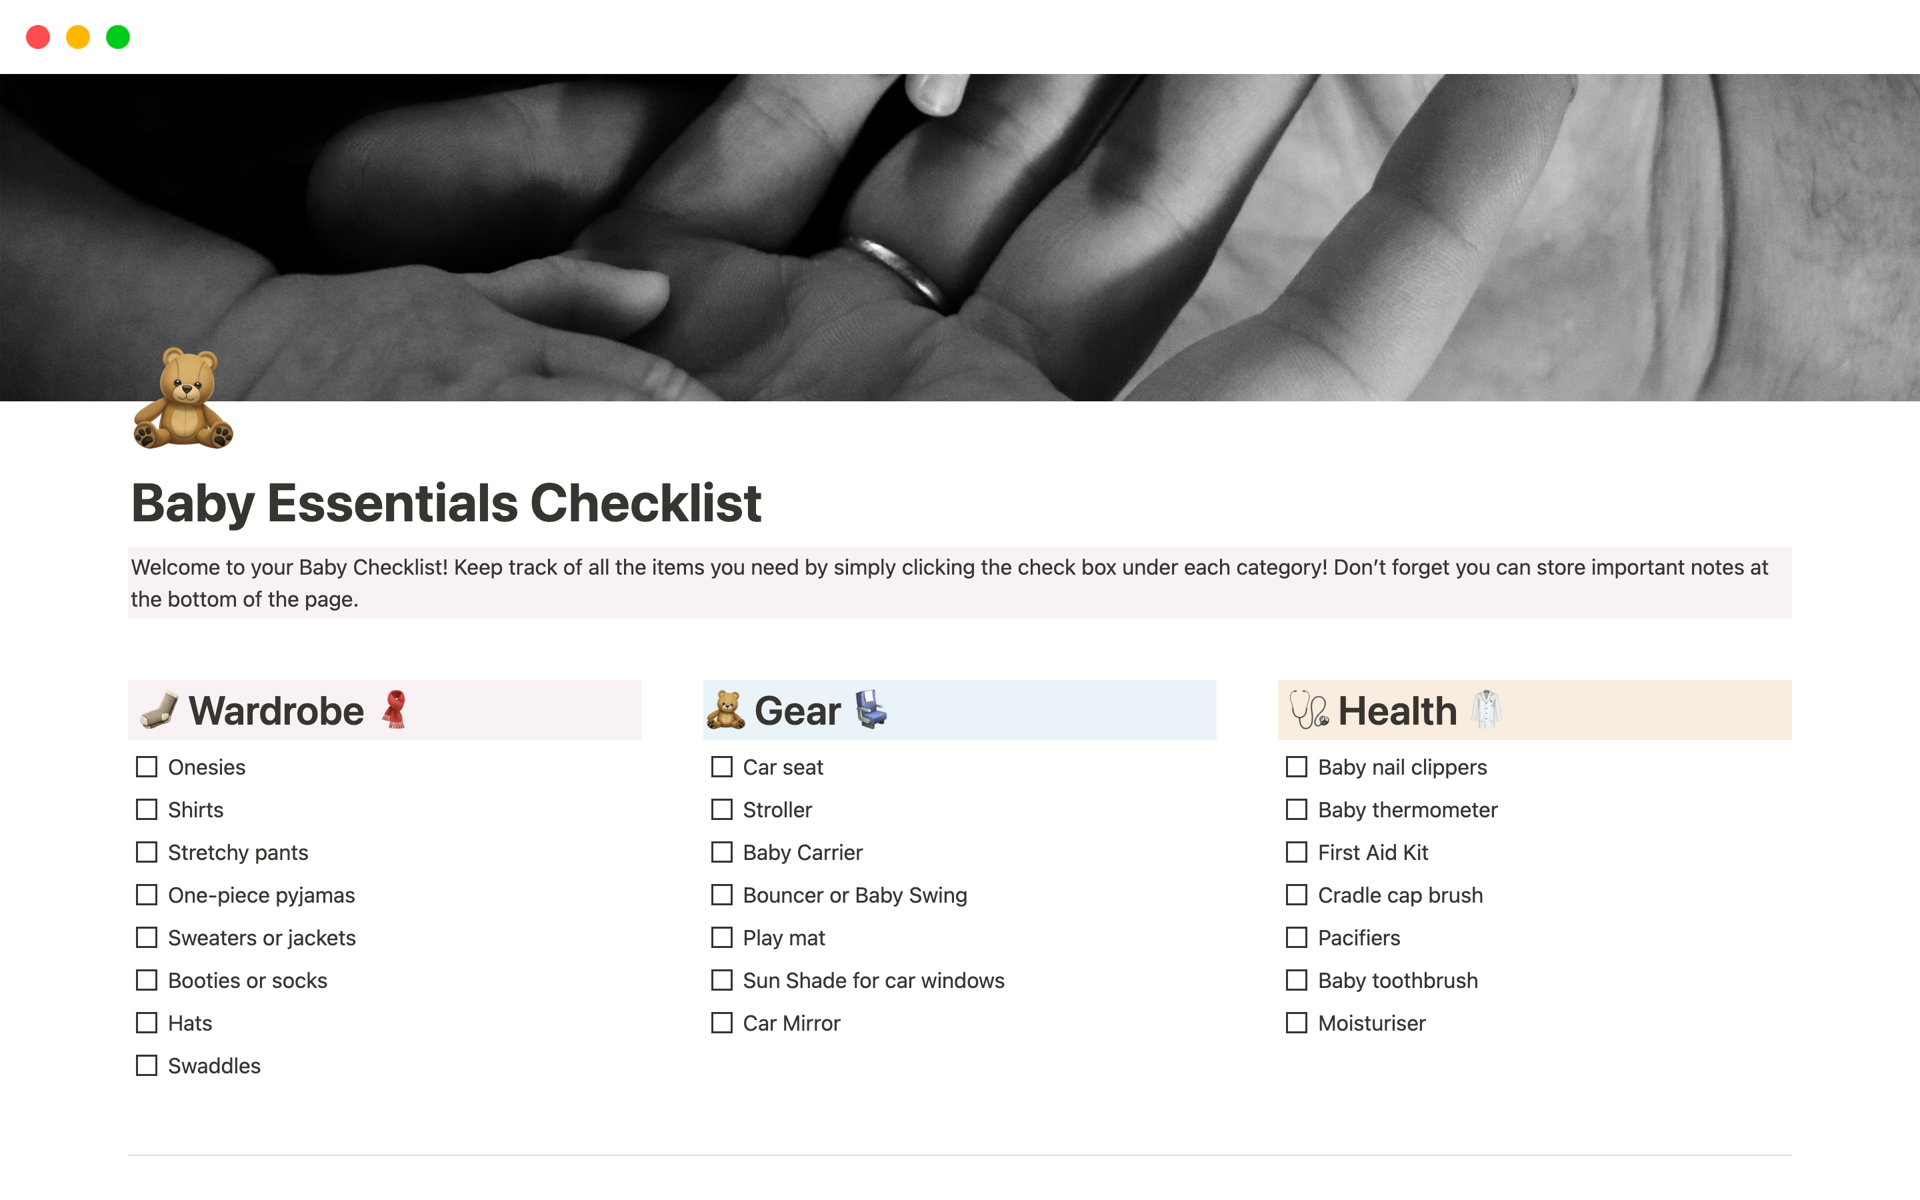 Vista previa de plantilla para Baby Essentials Checklist